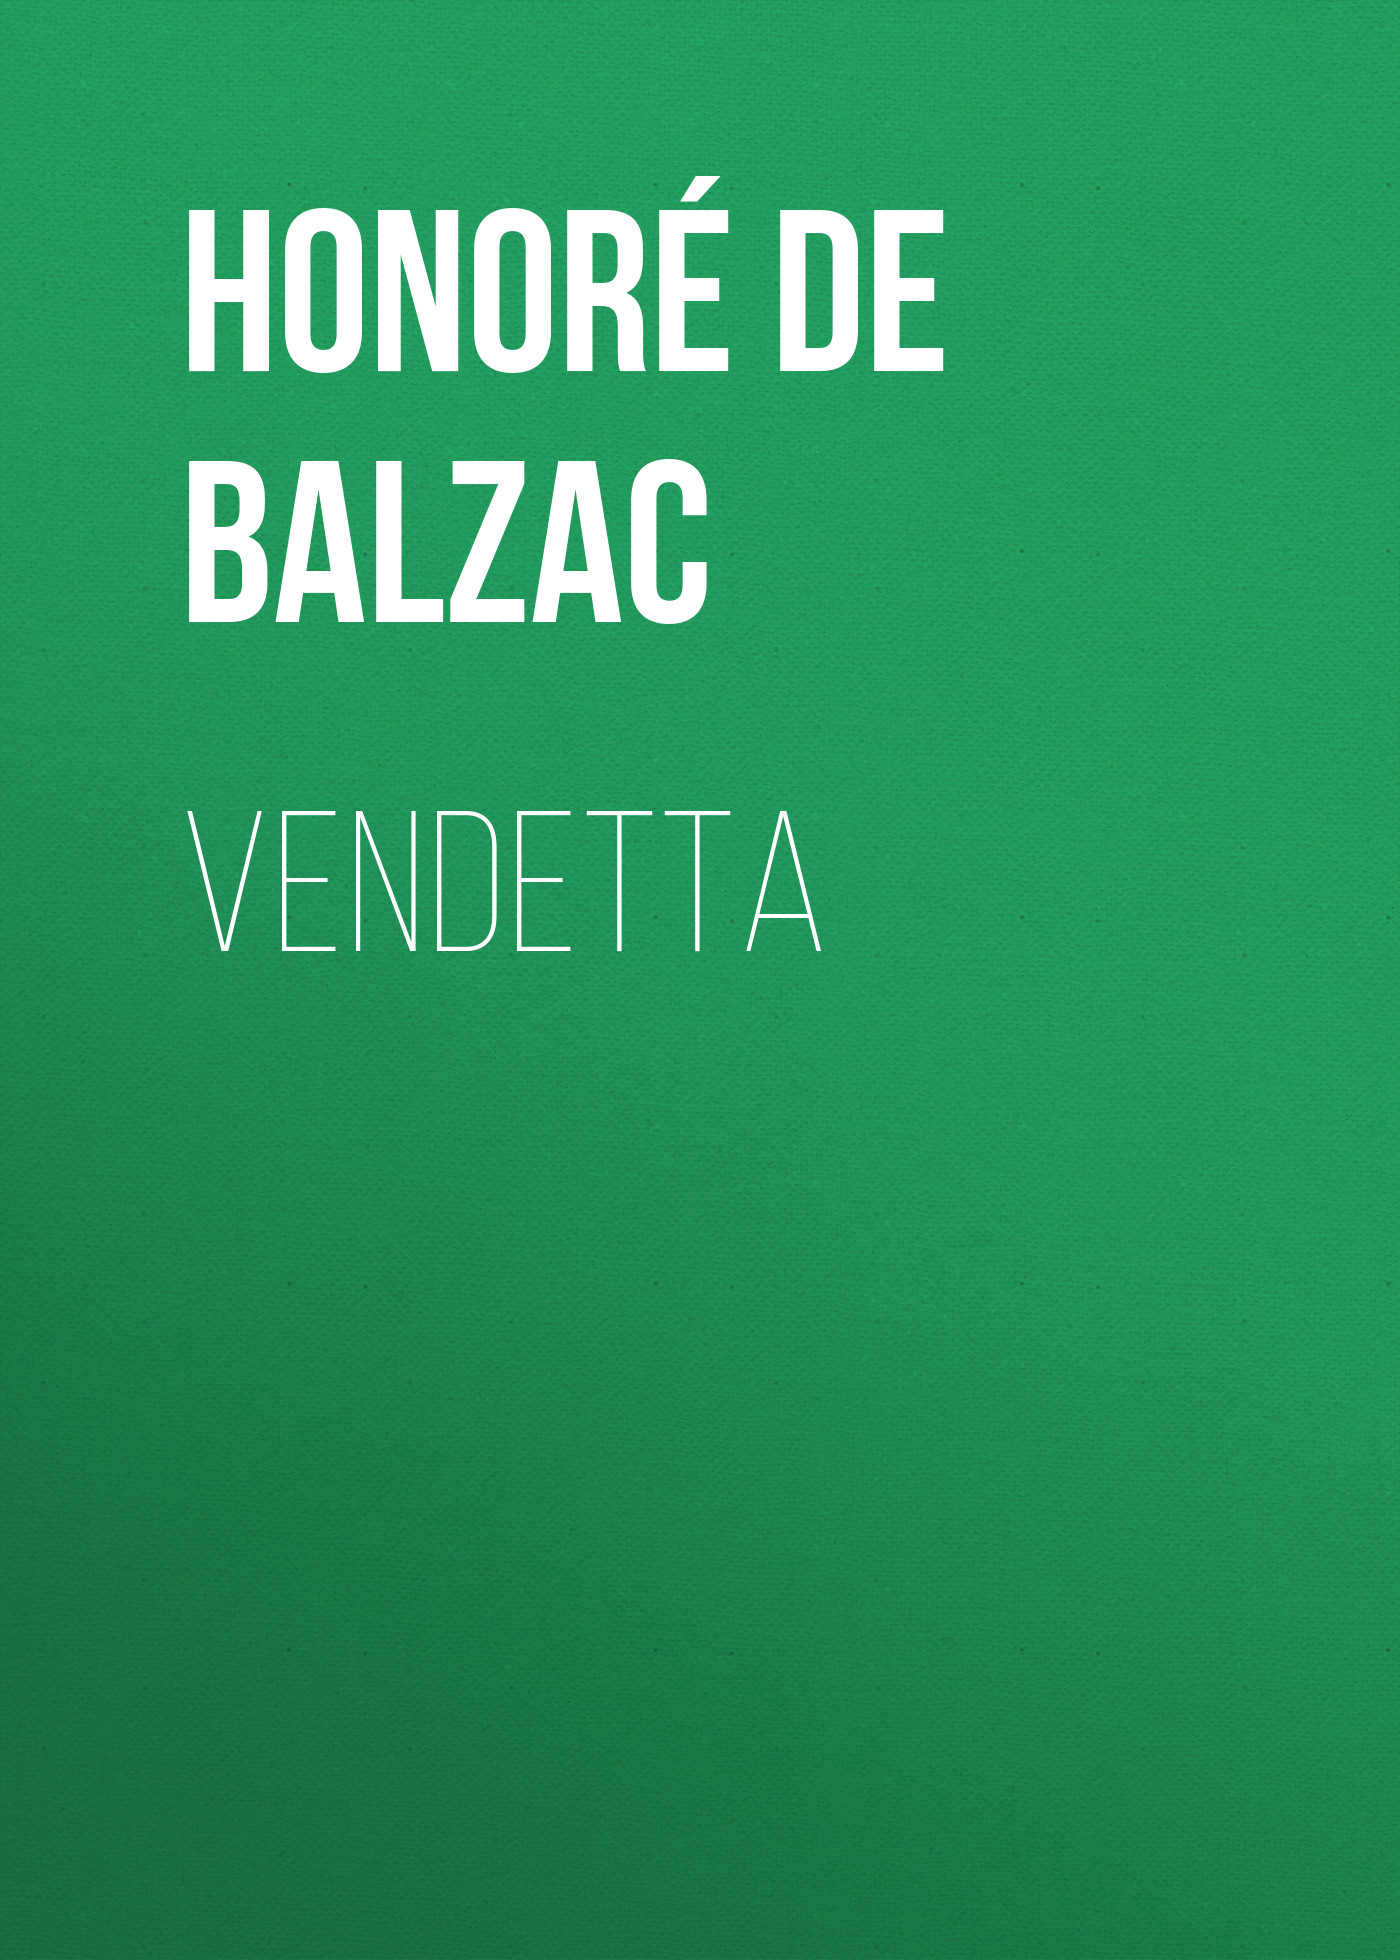 Книга Vendetta из серии , созданная Honoré Balzac, может относится к жанру Литература 19 века, Зарубежная старинная литература, Зарубежная классика. Стоимость электронной книги Vendetta с идентификатором 25021003 составляет 0 руб.